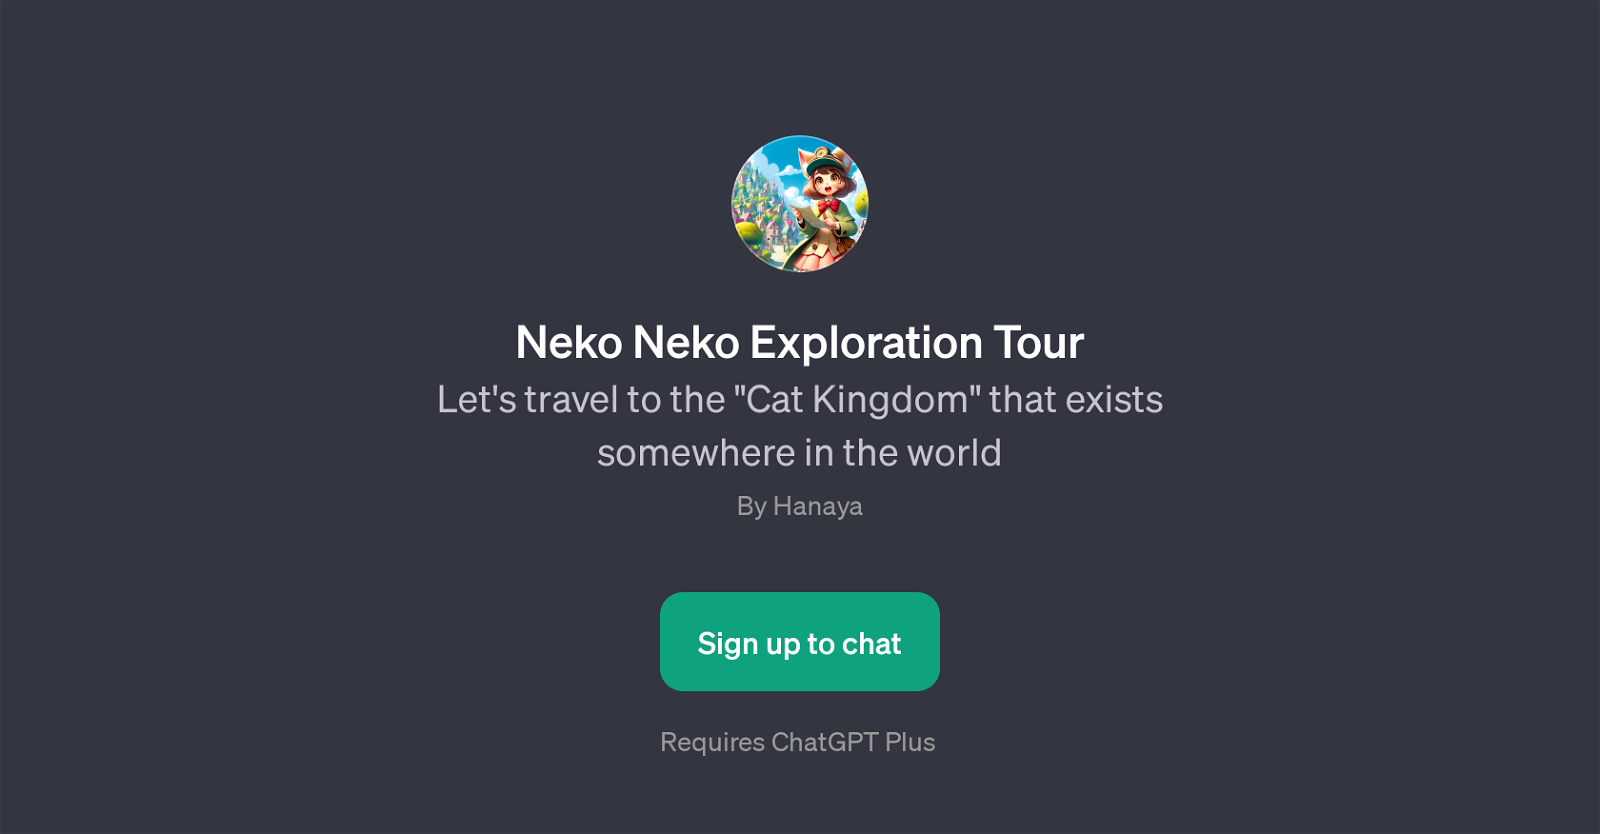 Neko Neko Exploration Tour website